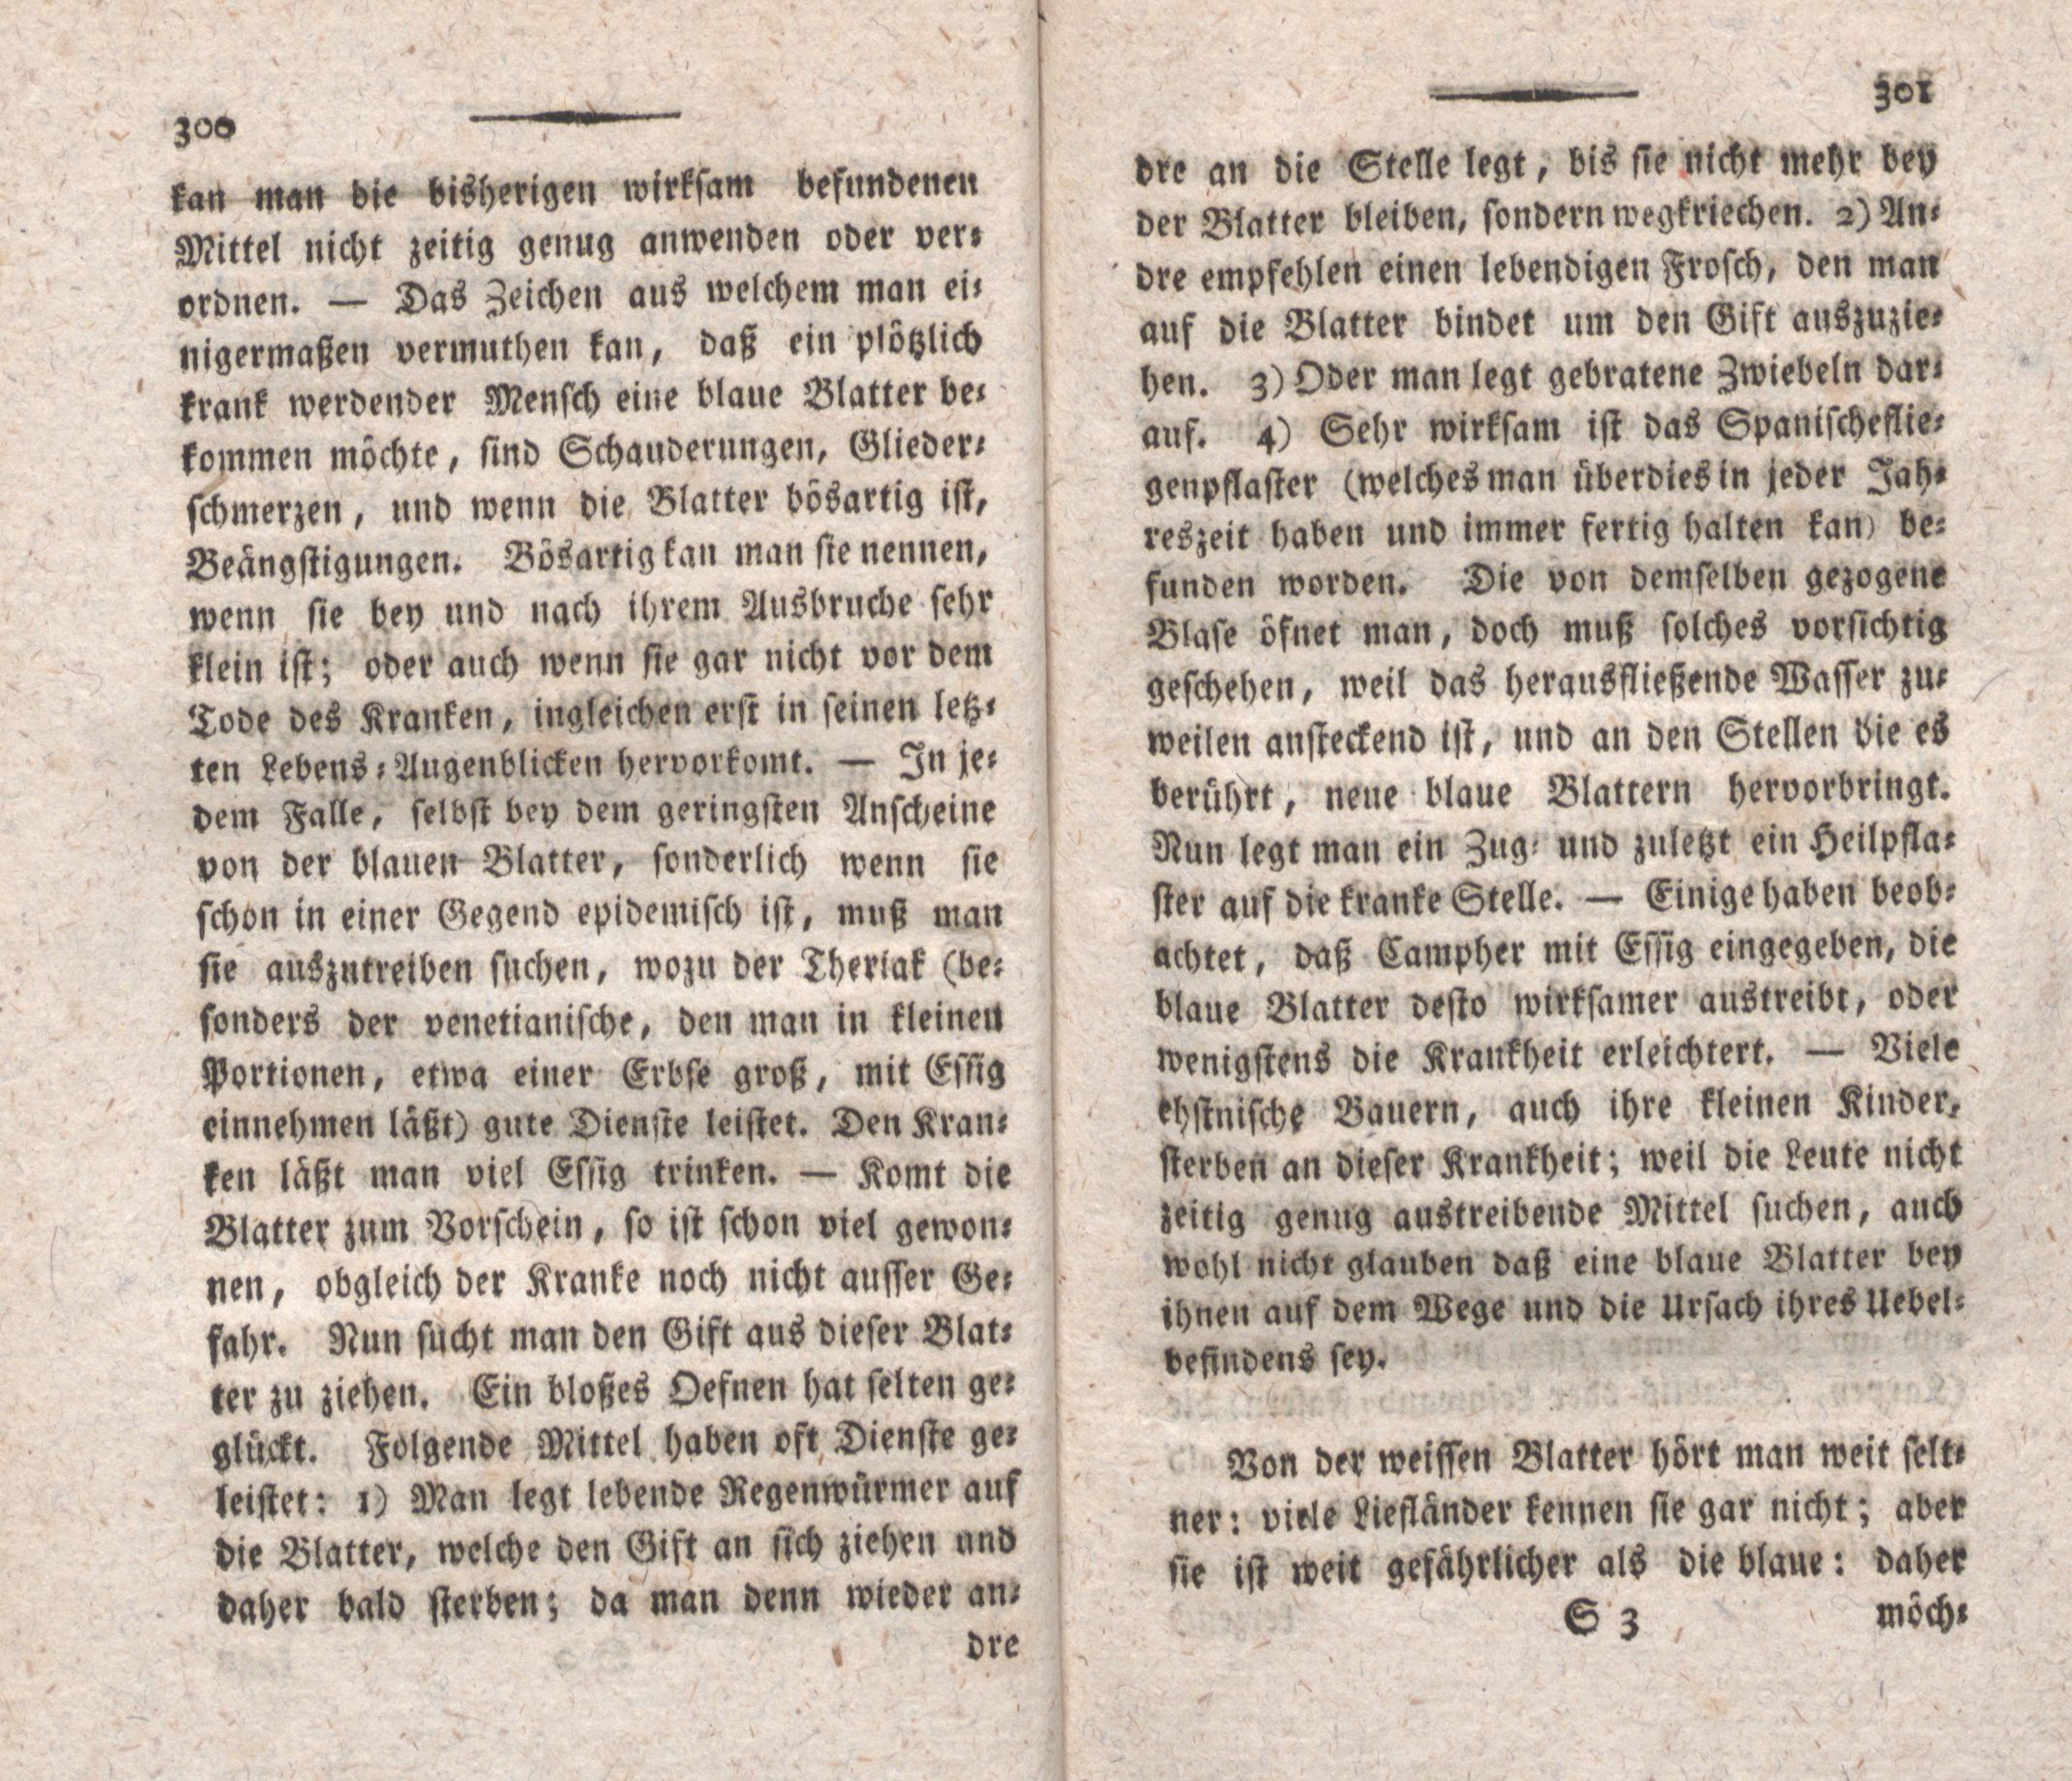 Einige in Liefland über die blaue- und über die weisse Blatter neuerlichst gesammelte Beobachtungen (1798) | 2. (300-301) Основной текст